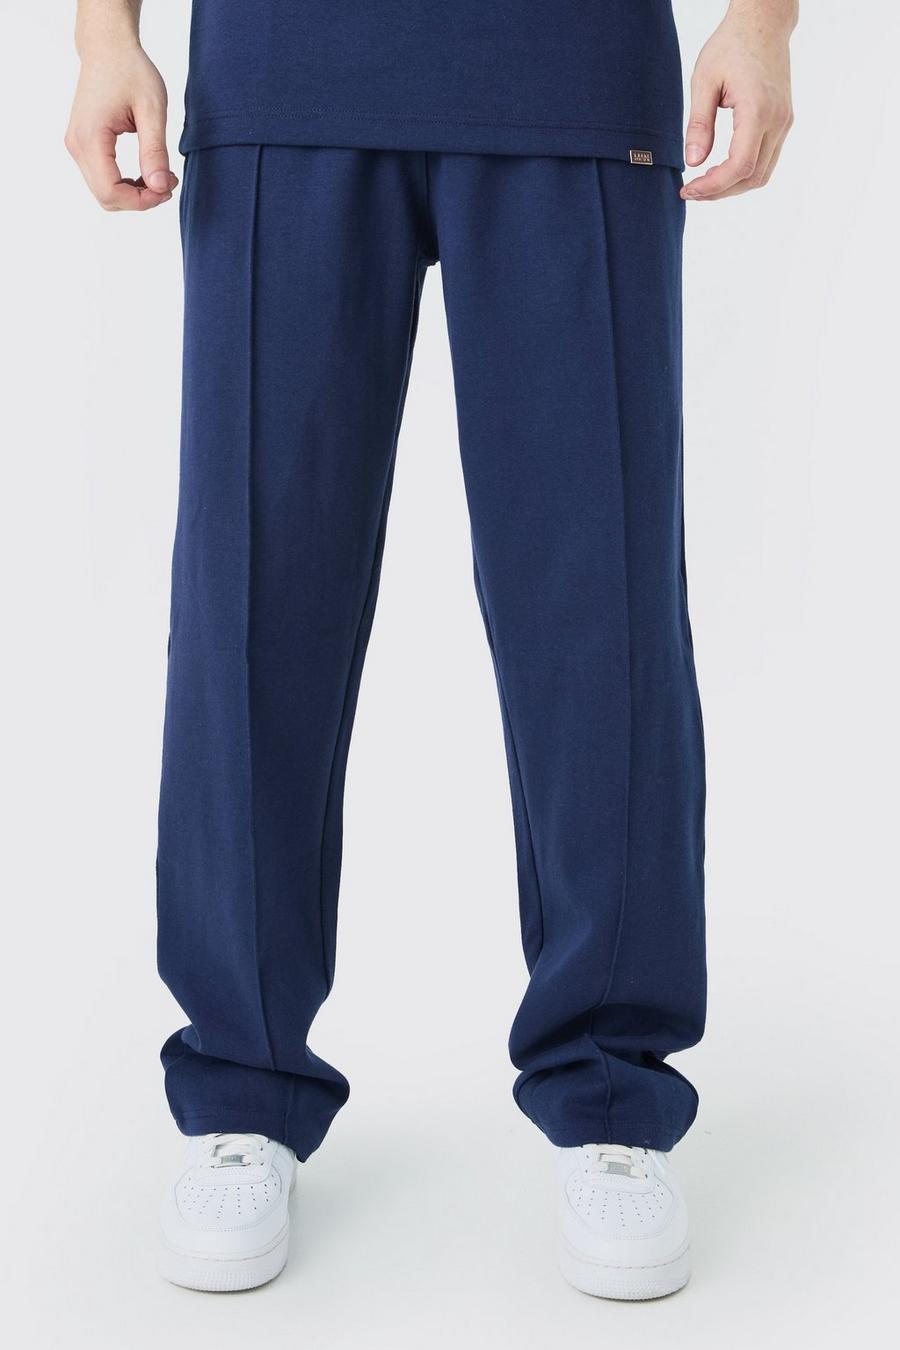 Pantalón deportivo Tall holgado con alforza, Navy